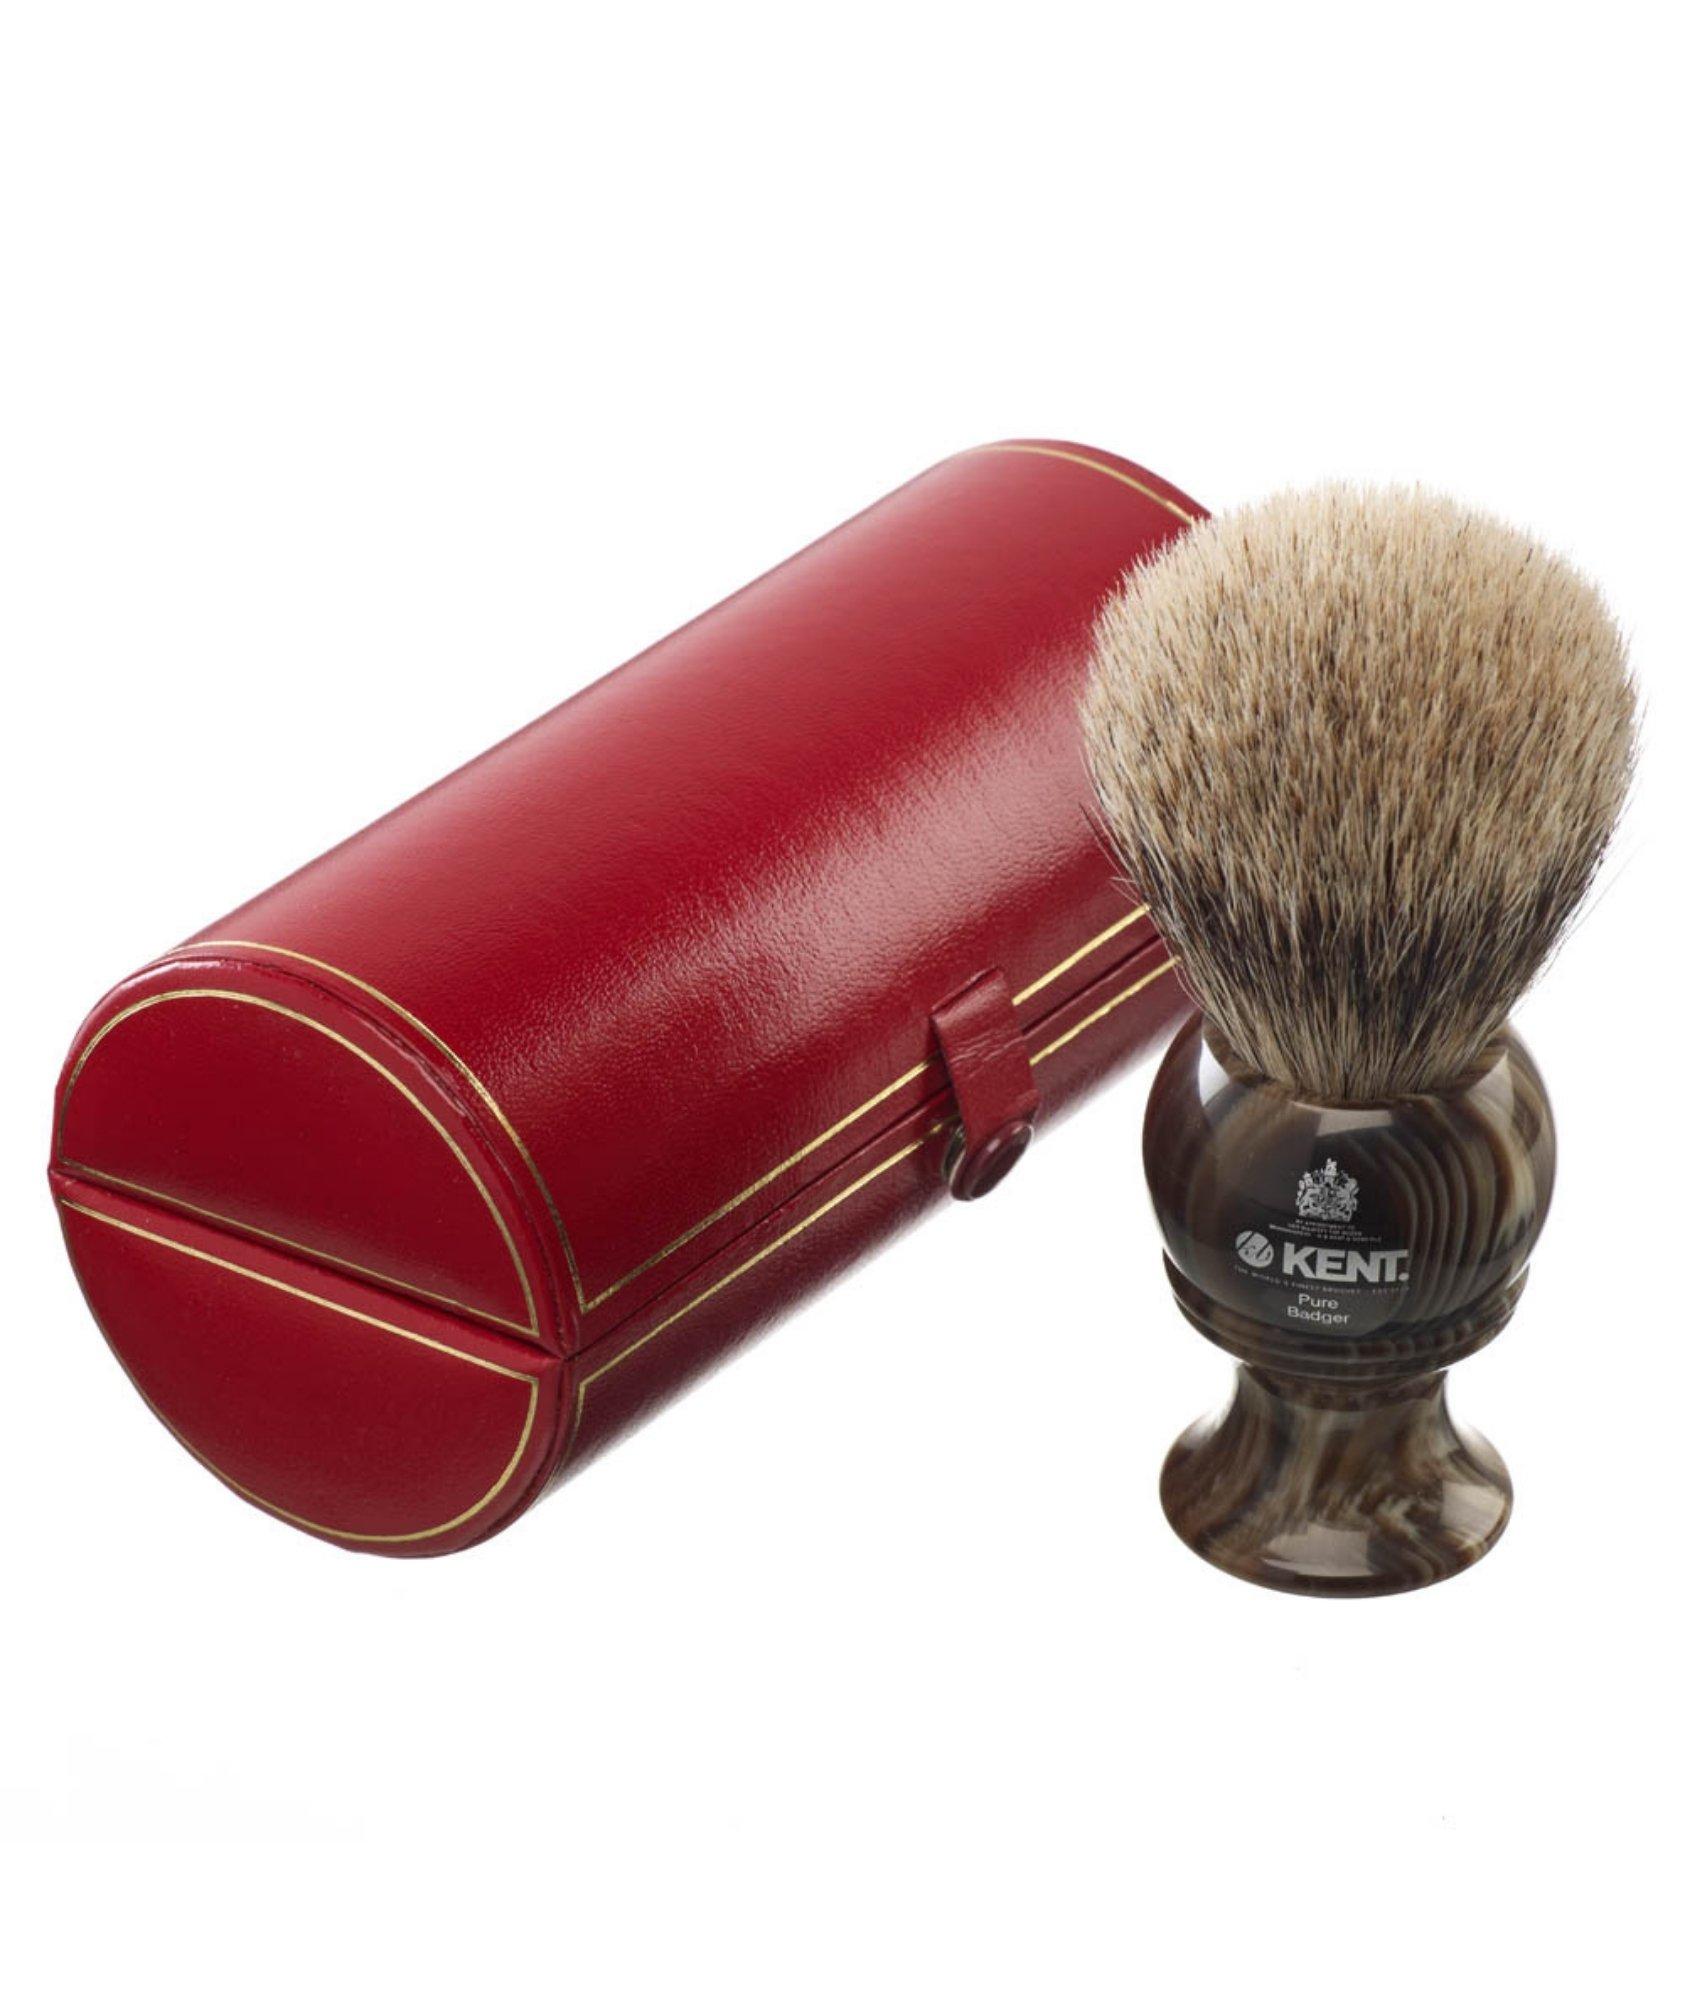 K-H8 Horn Shaving Brush,  Large image 0